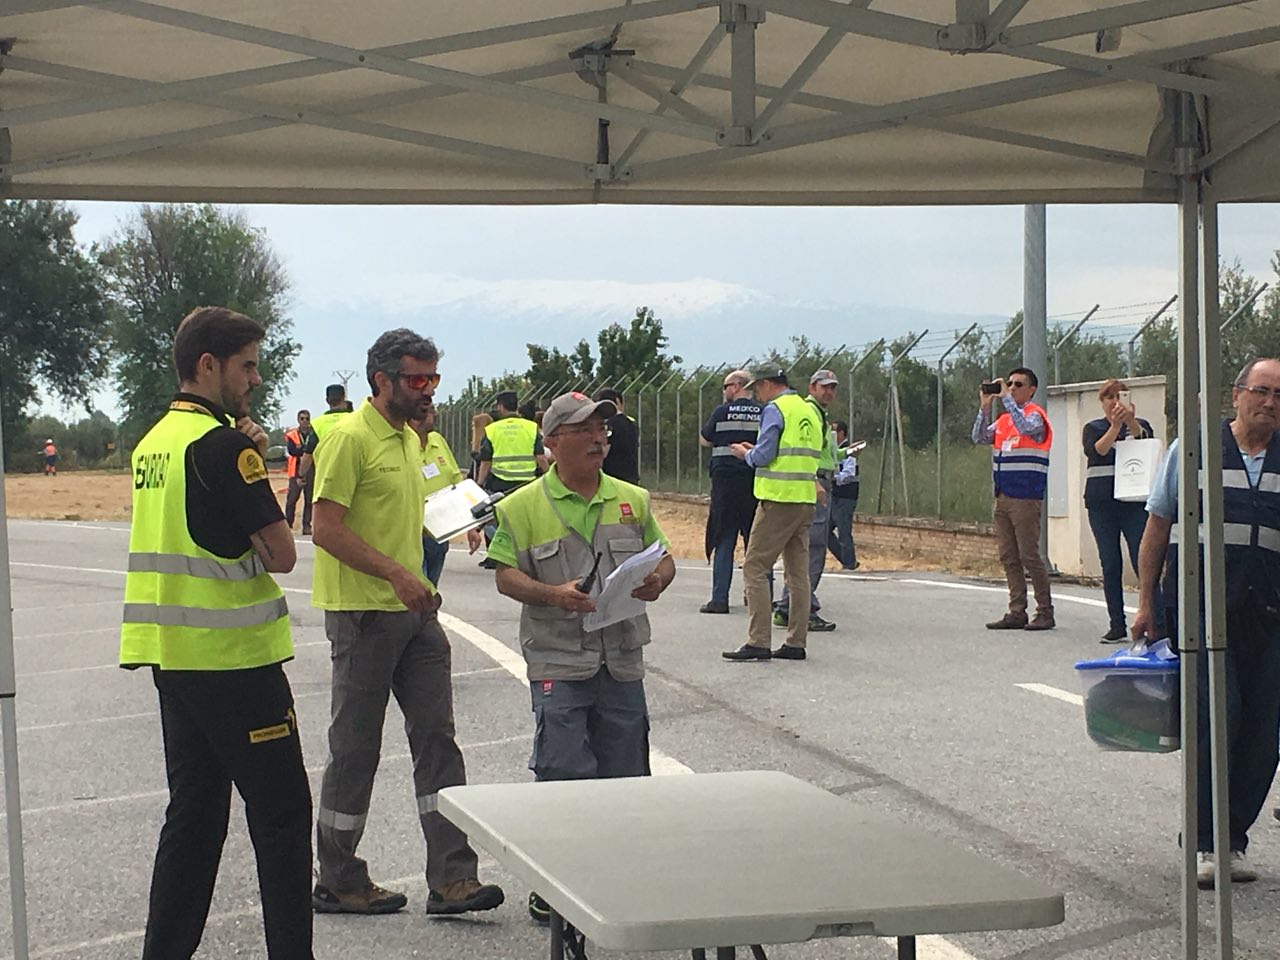 El Aeropuerto Federico García Lorca de Granada ha realizado este miércoles un simulacro de accidente aéreo para poner a prueba los mecanismos de coordinación y respuesta ante este tipo de incidentes y avanzar en la implantación y mejora de los planes de emergencia